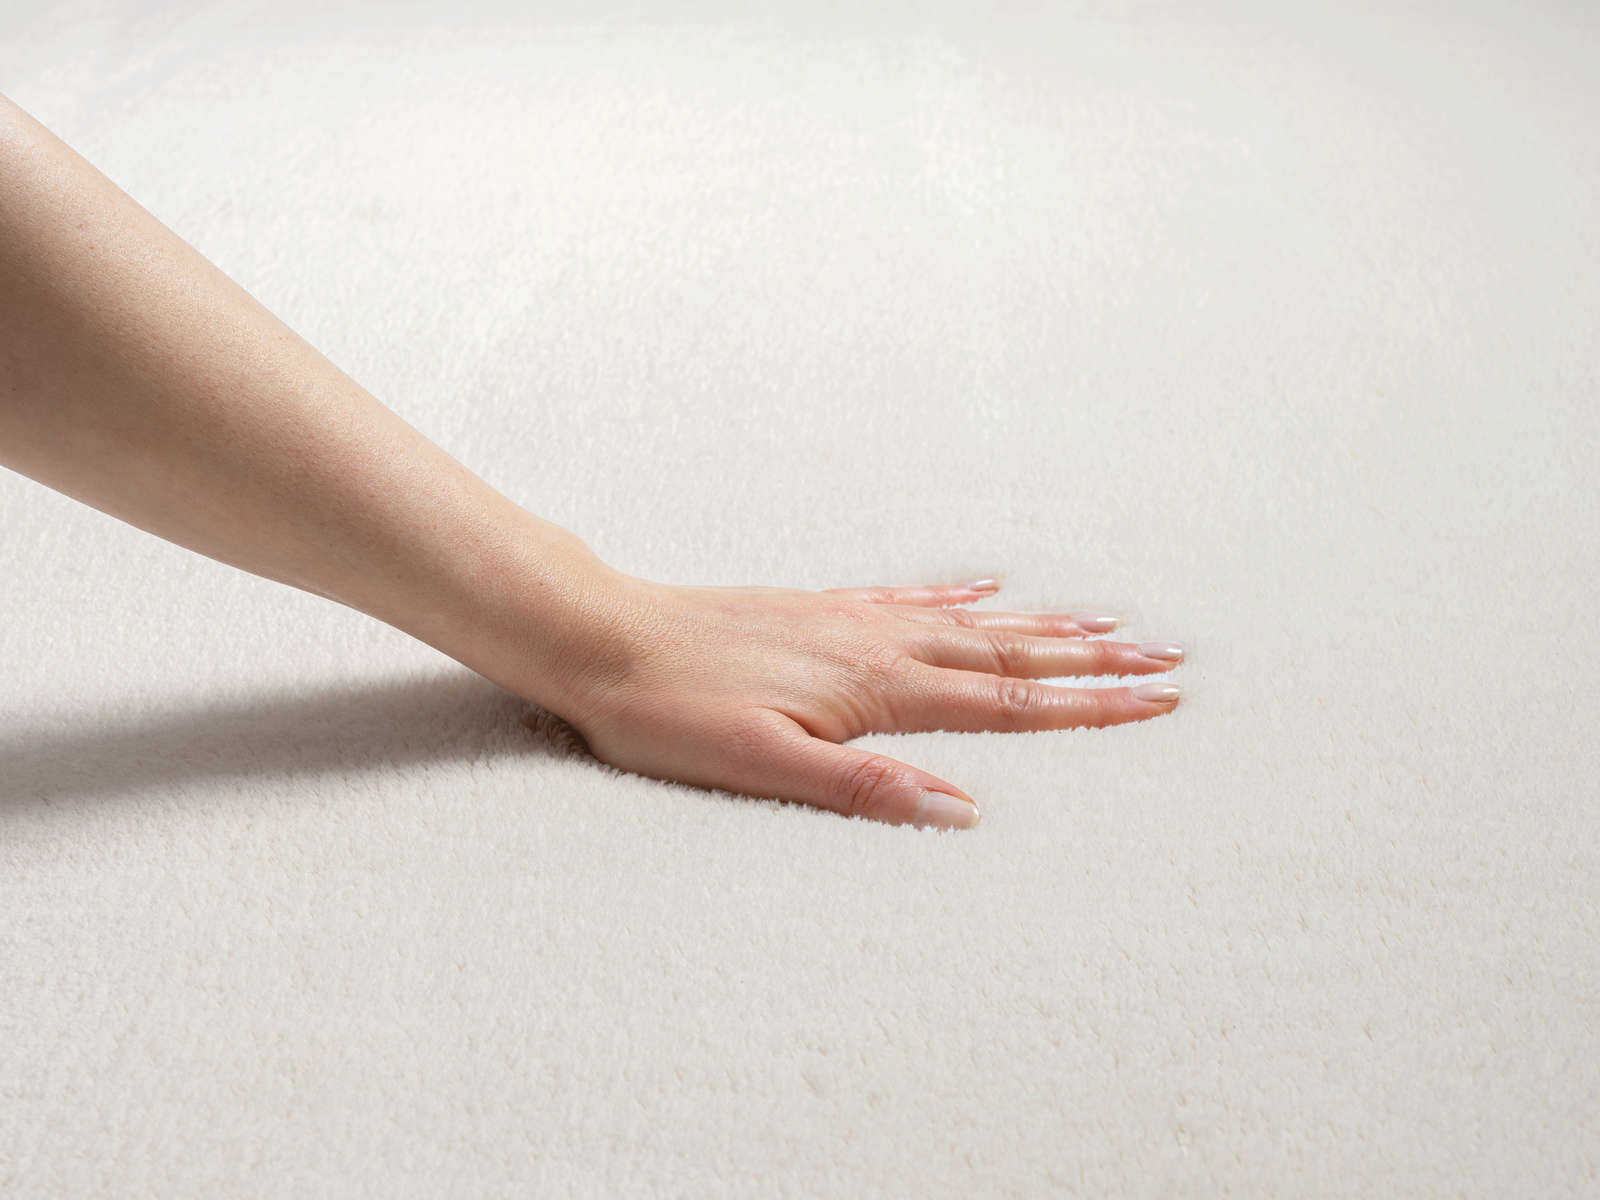             Modischer Hochflor Teppich in Creme – 110 x 60 cm
        